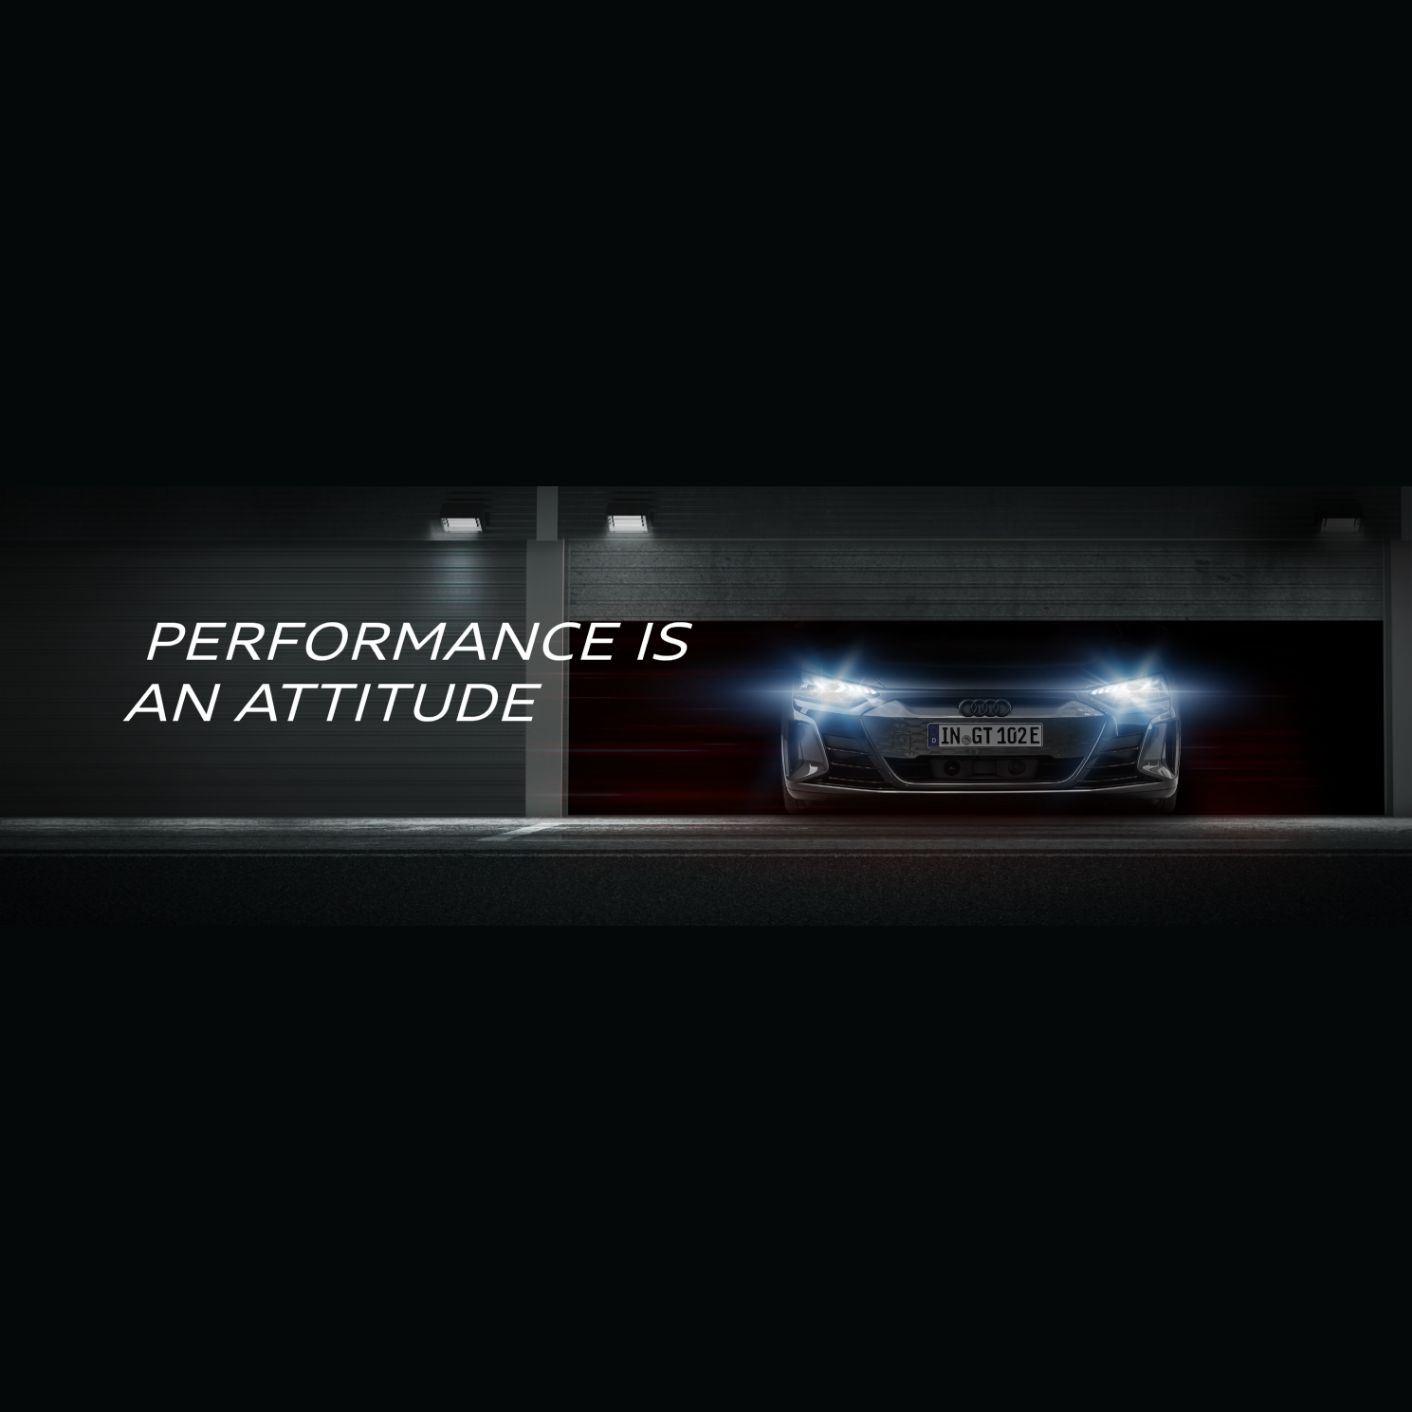 Hankook Tire fournira des pneus ultra-haute performance pour le programme Audi Sport Driving Experience